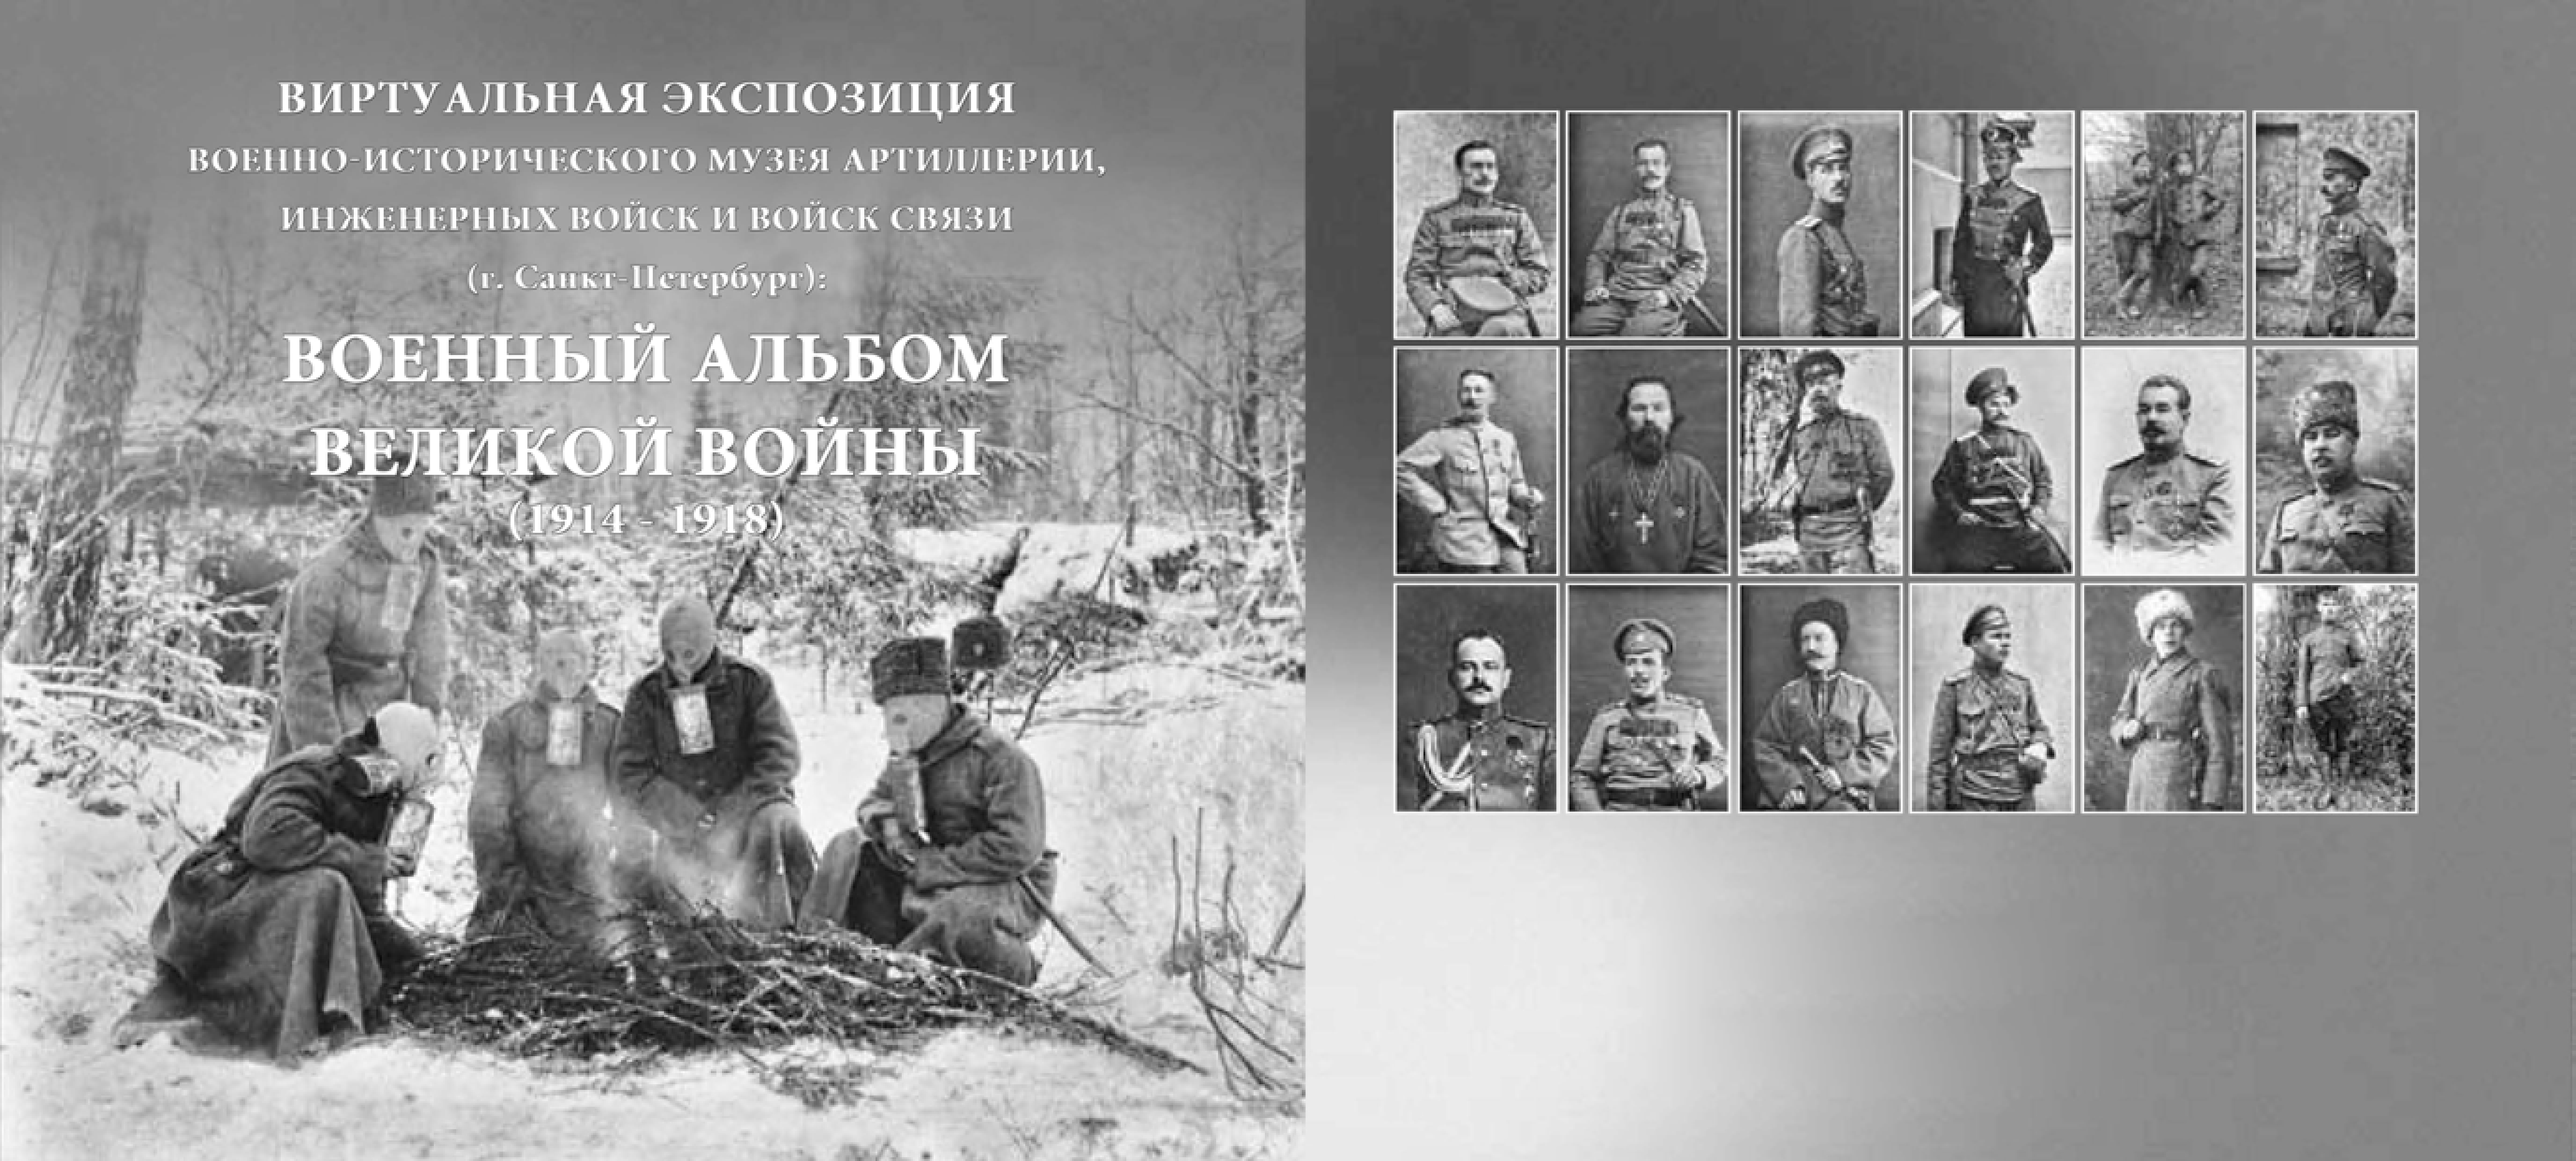 Album wojskowy Wielkiej Wojny (1914 - 1918)